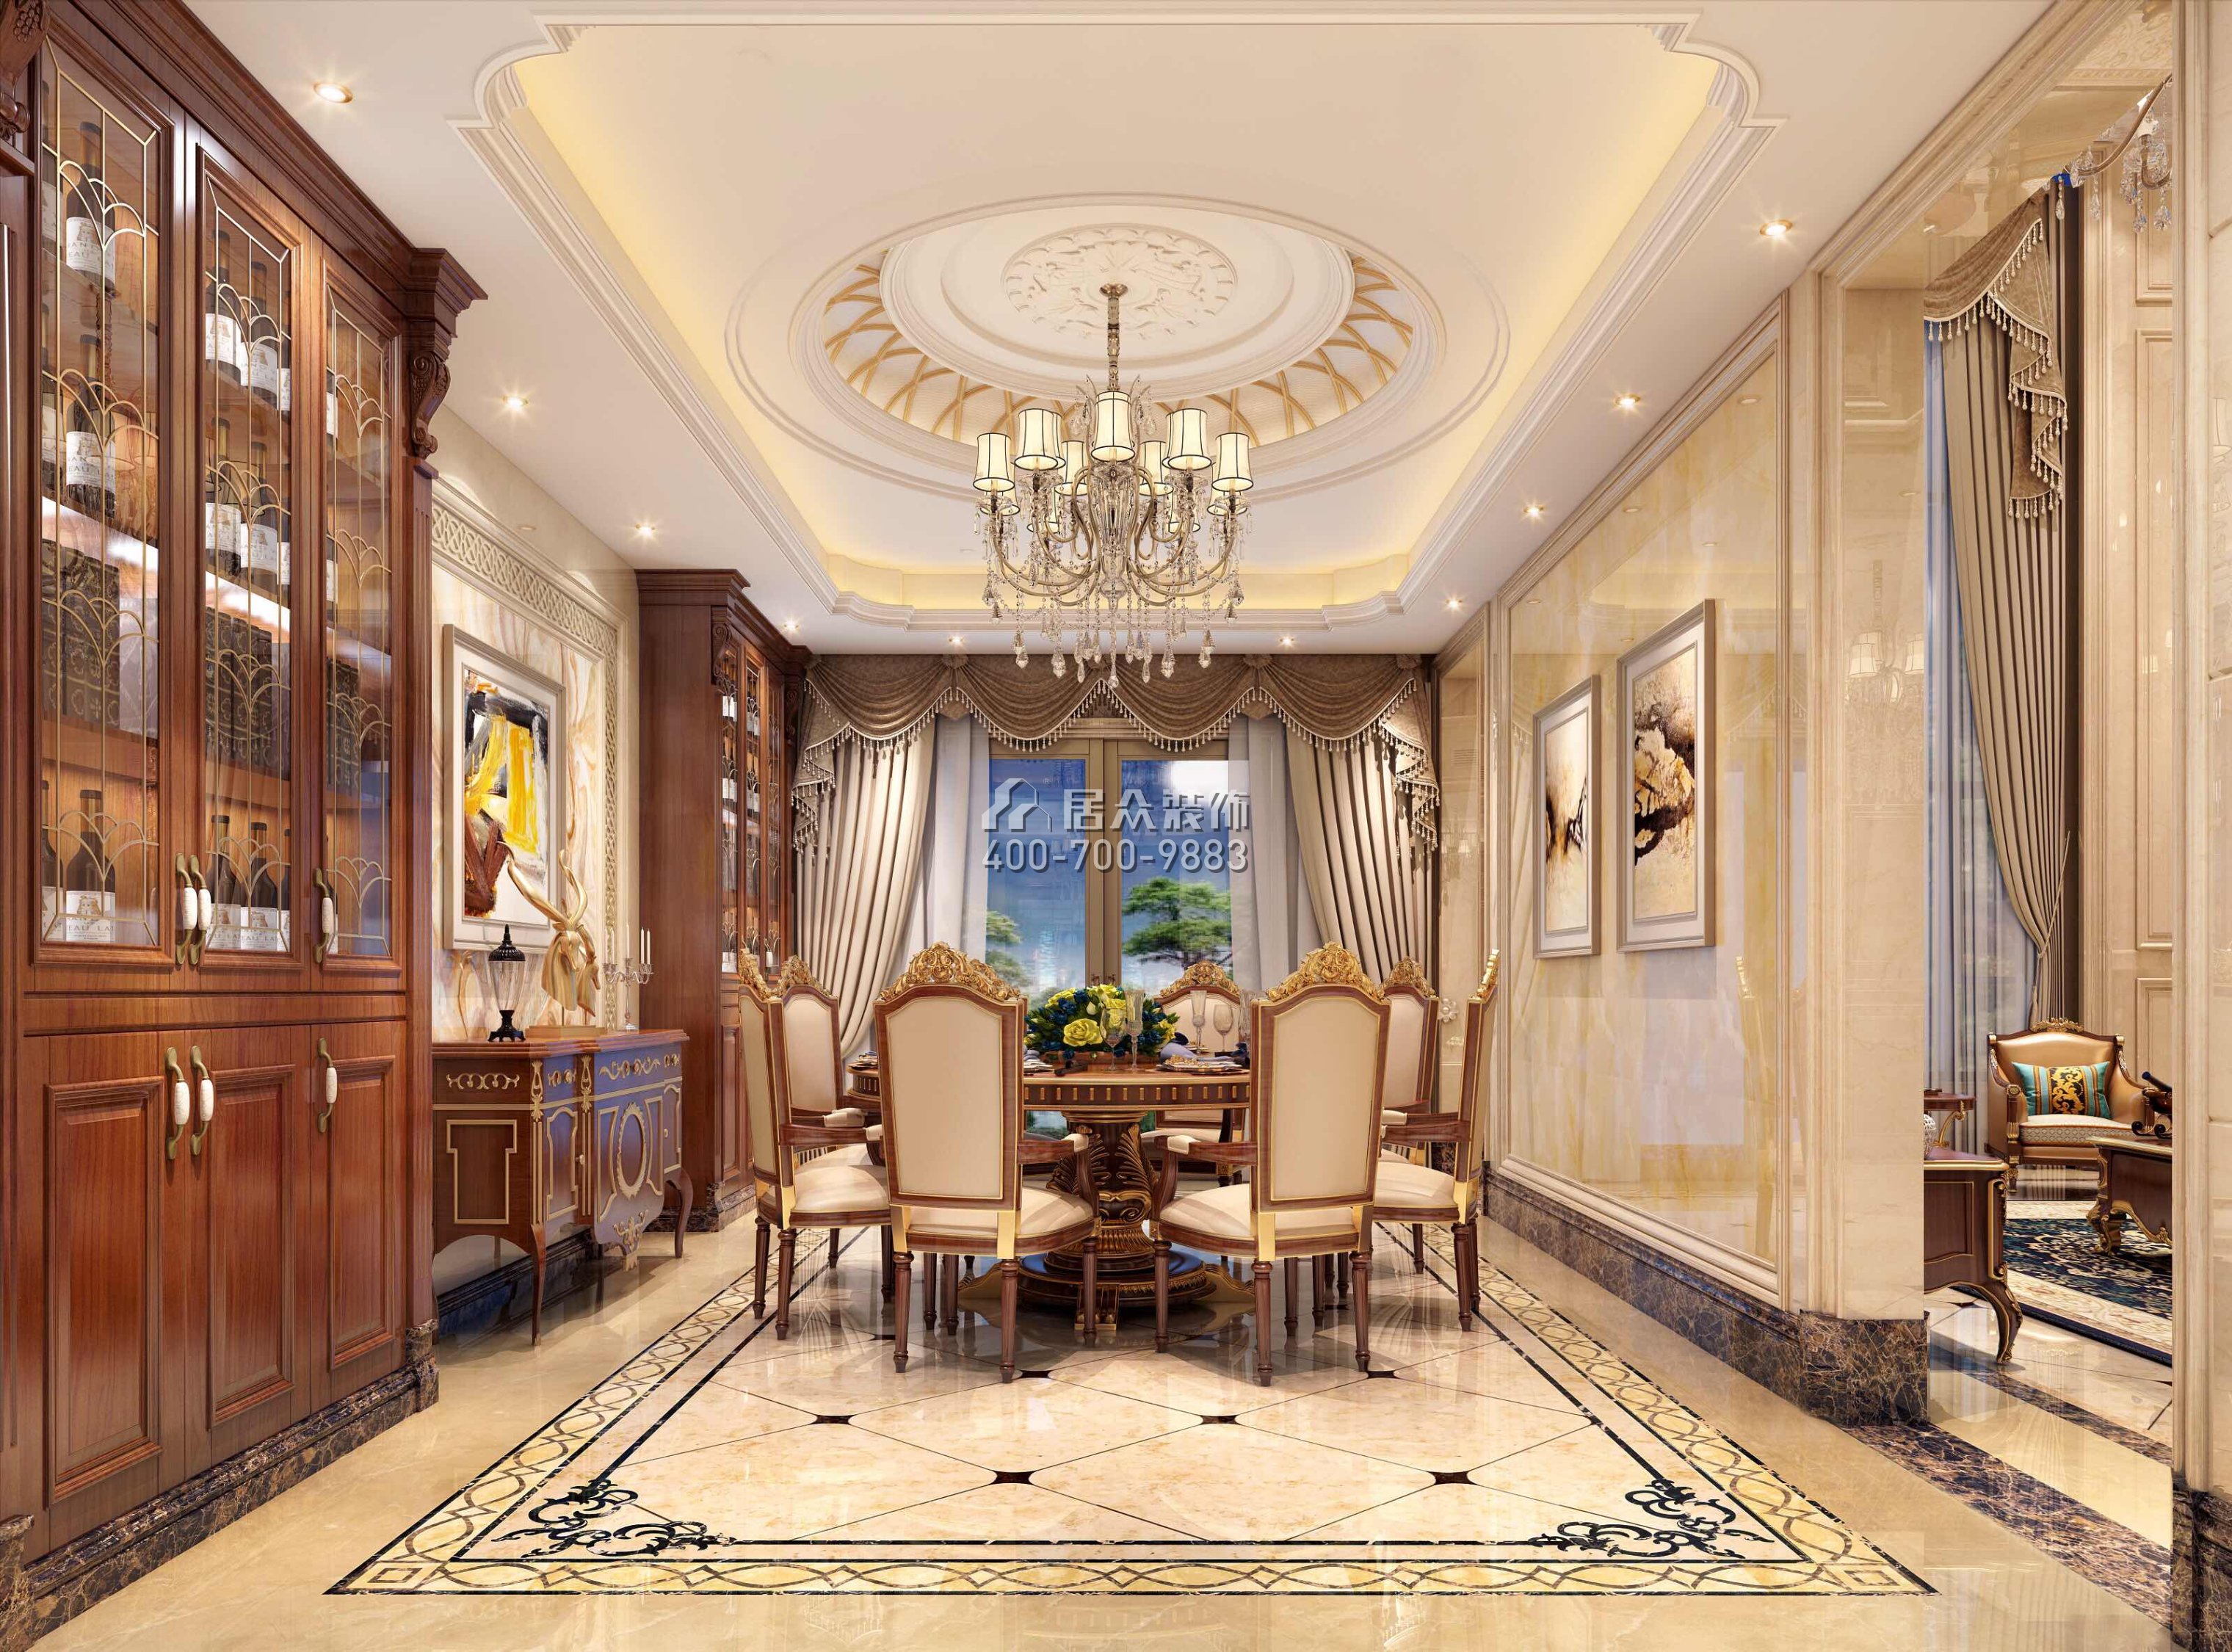 海逸豪庭321平方米欧式风格别墅户型餐厅装修效果图